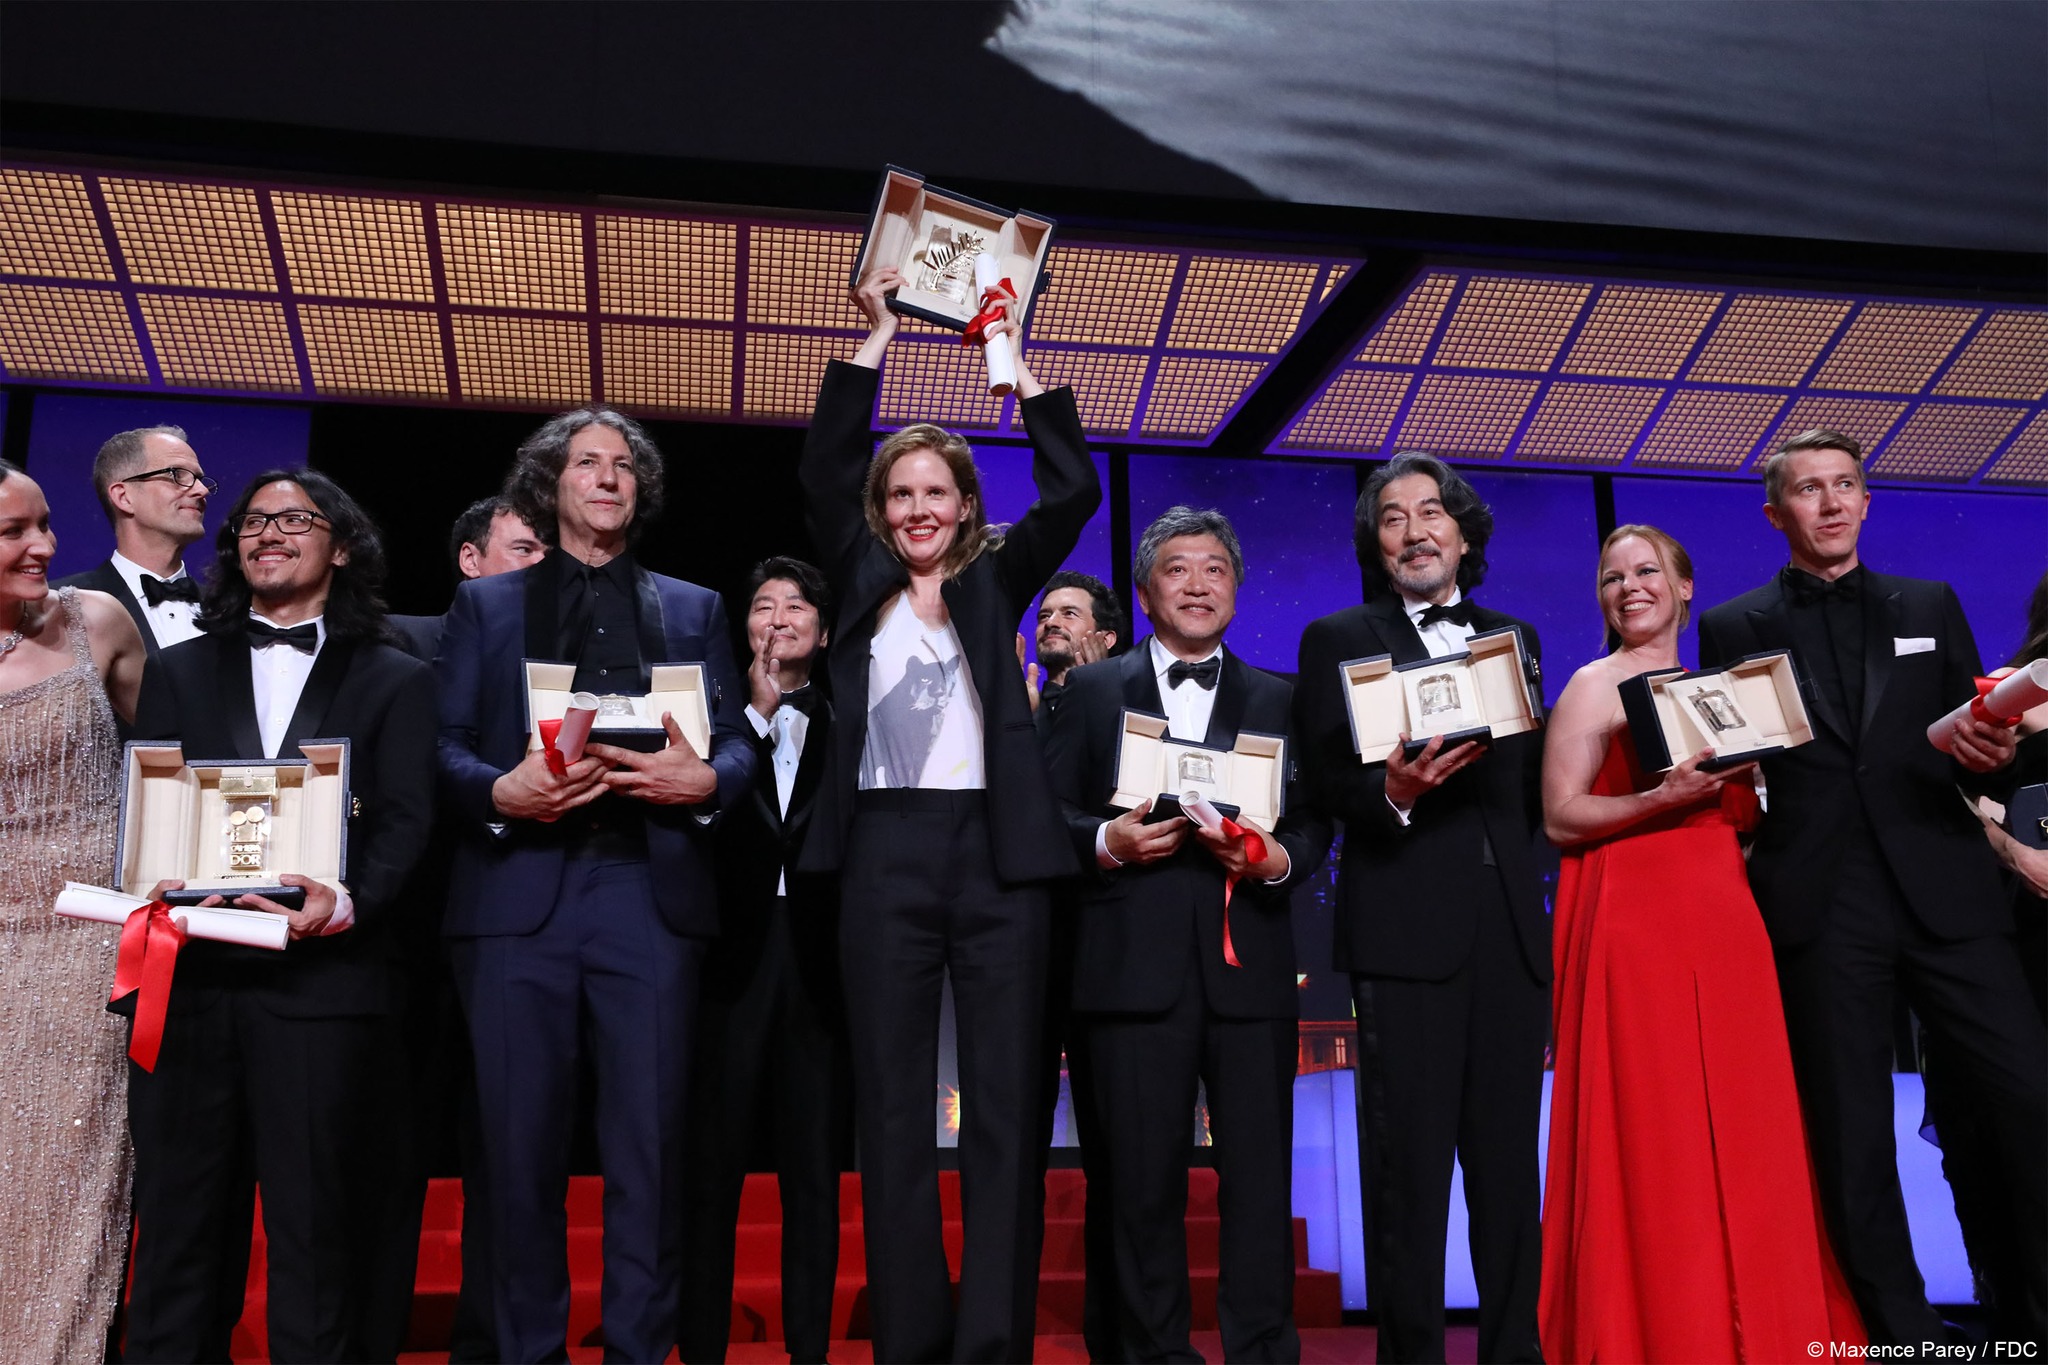 Imagen noticia ‘Cannes 2023’: Los ganadores del certamen